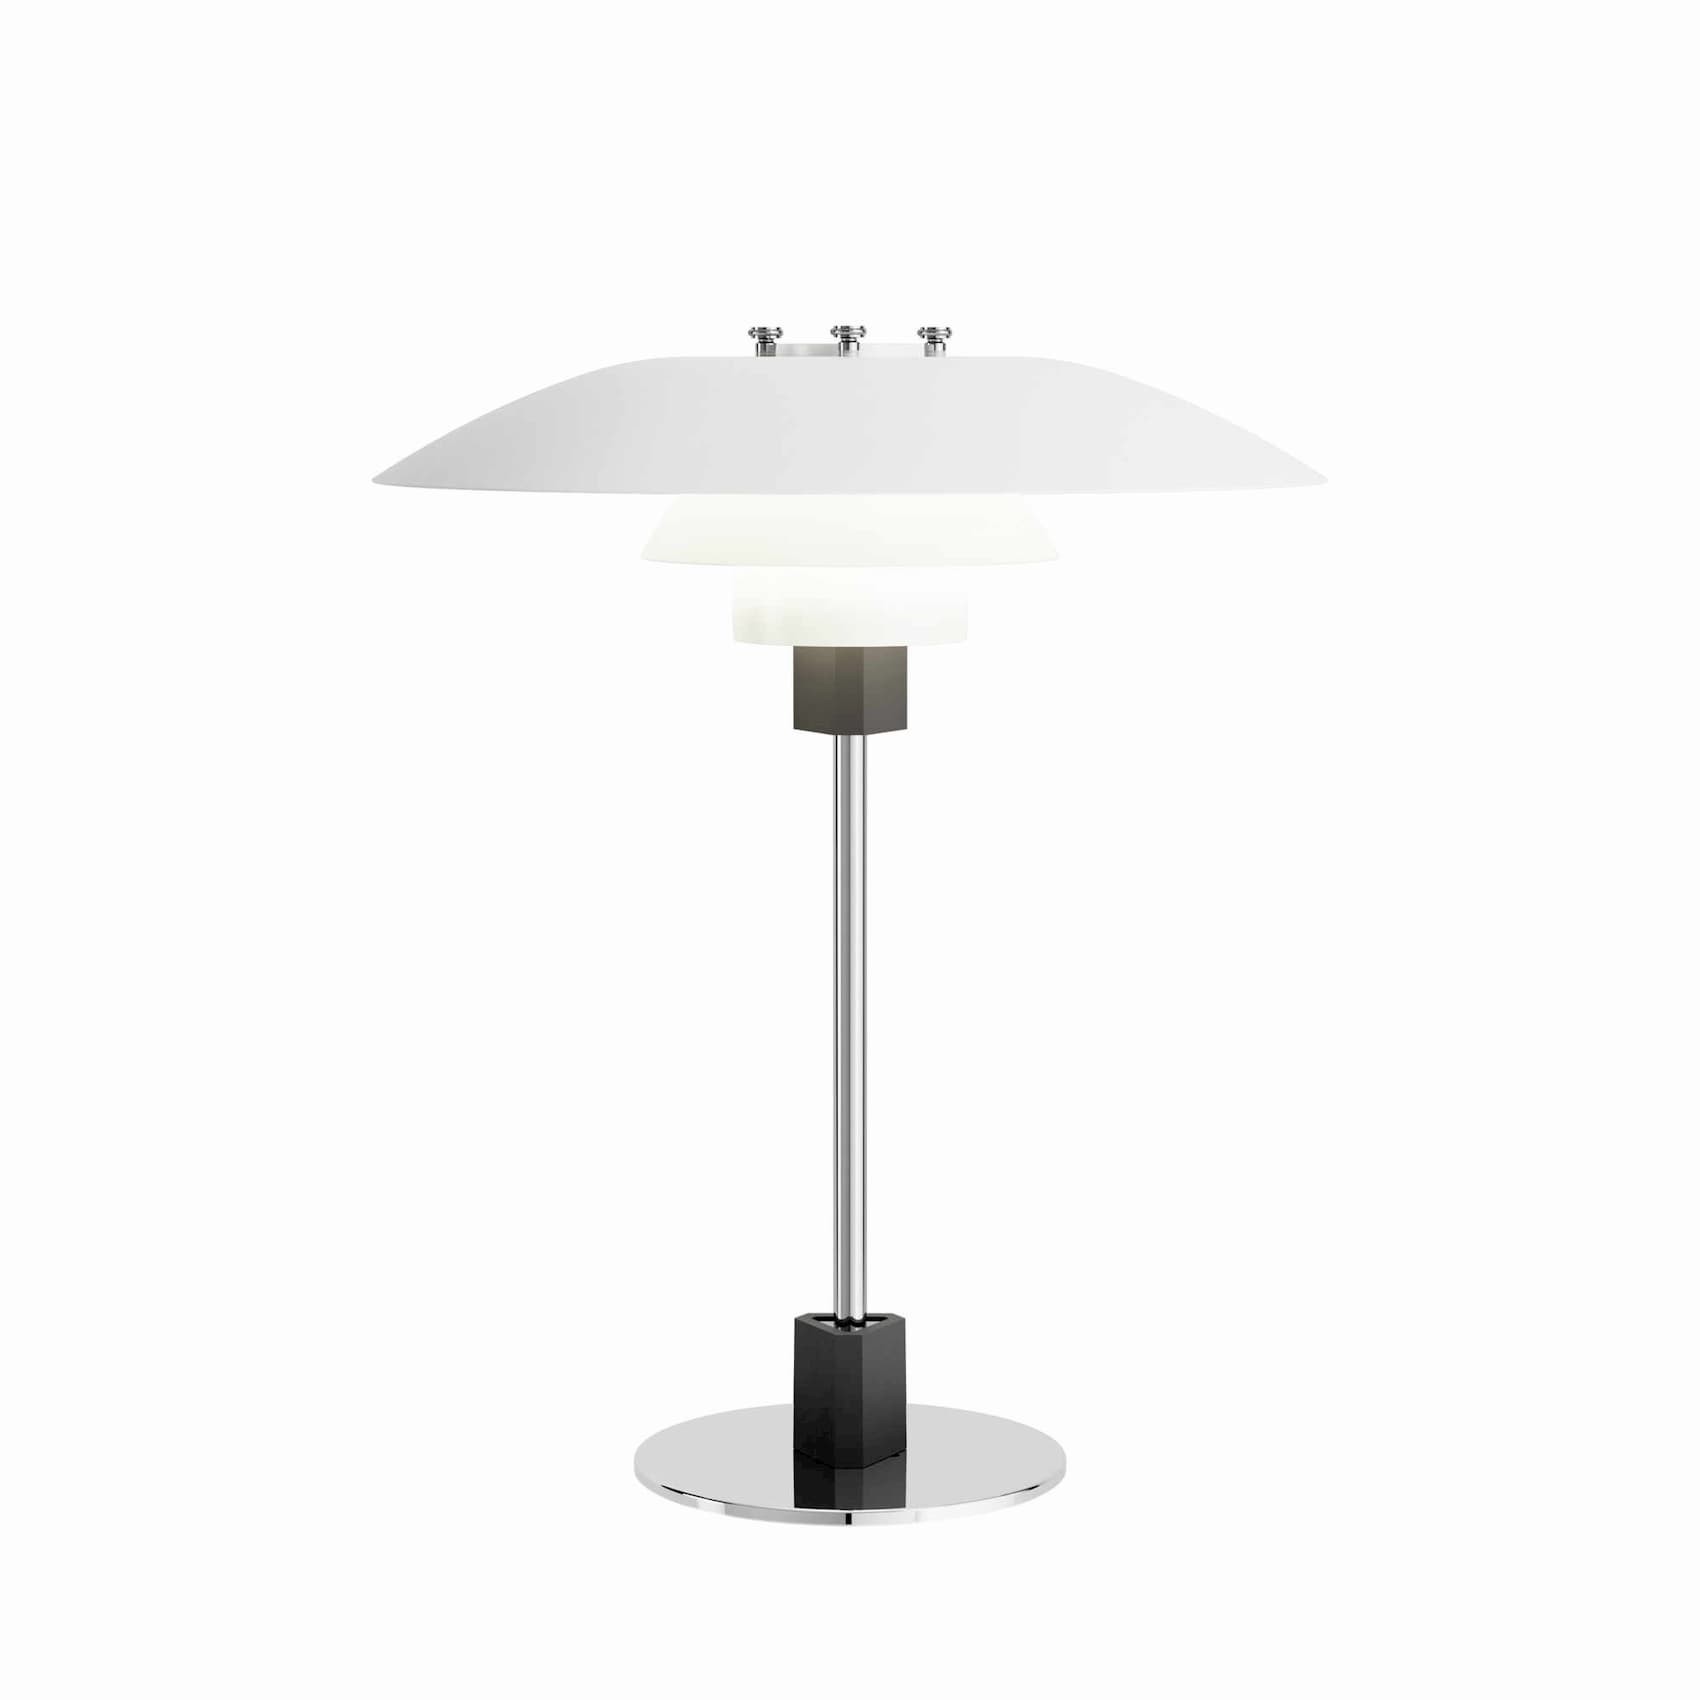 Louis Poulsen PH 4/3 table lamp